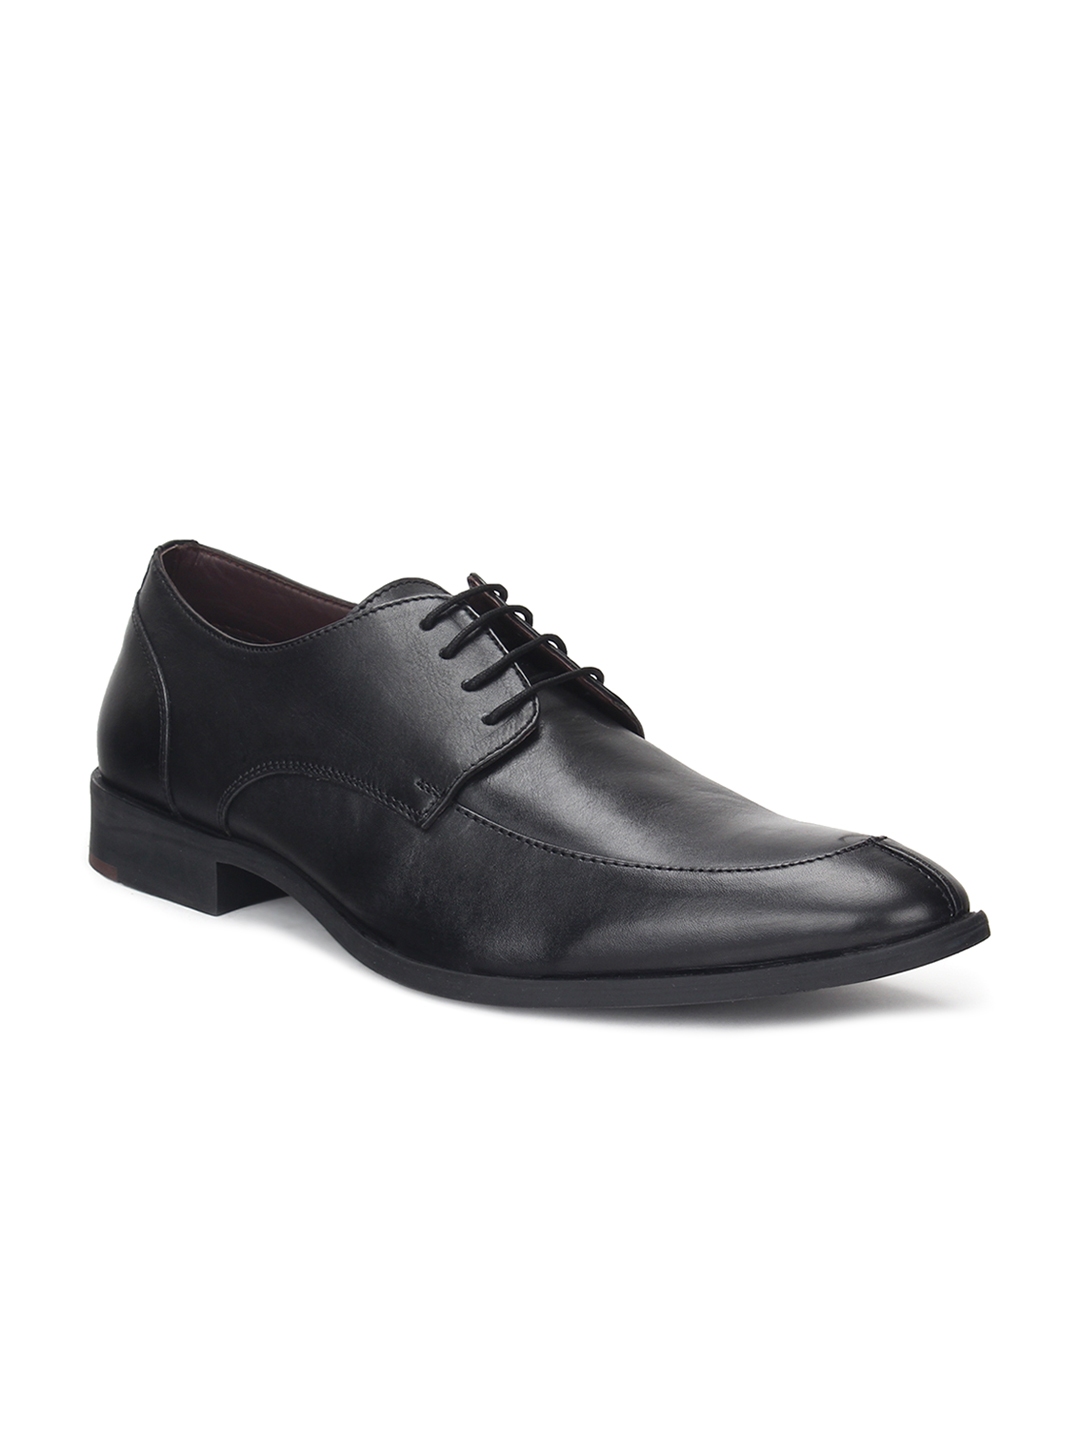 Buy Blackberrys Men Black Leather Formal Shoes - Formal Shoes for Men ...